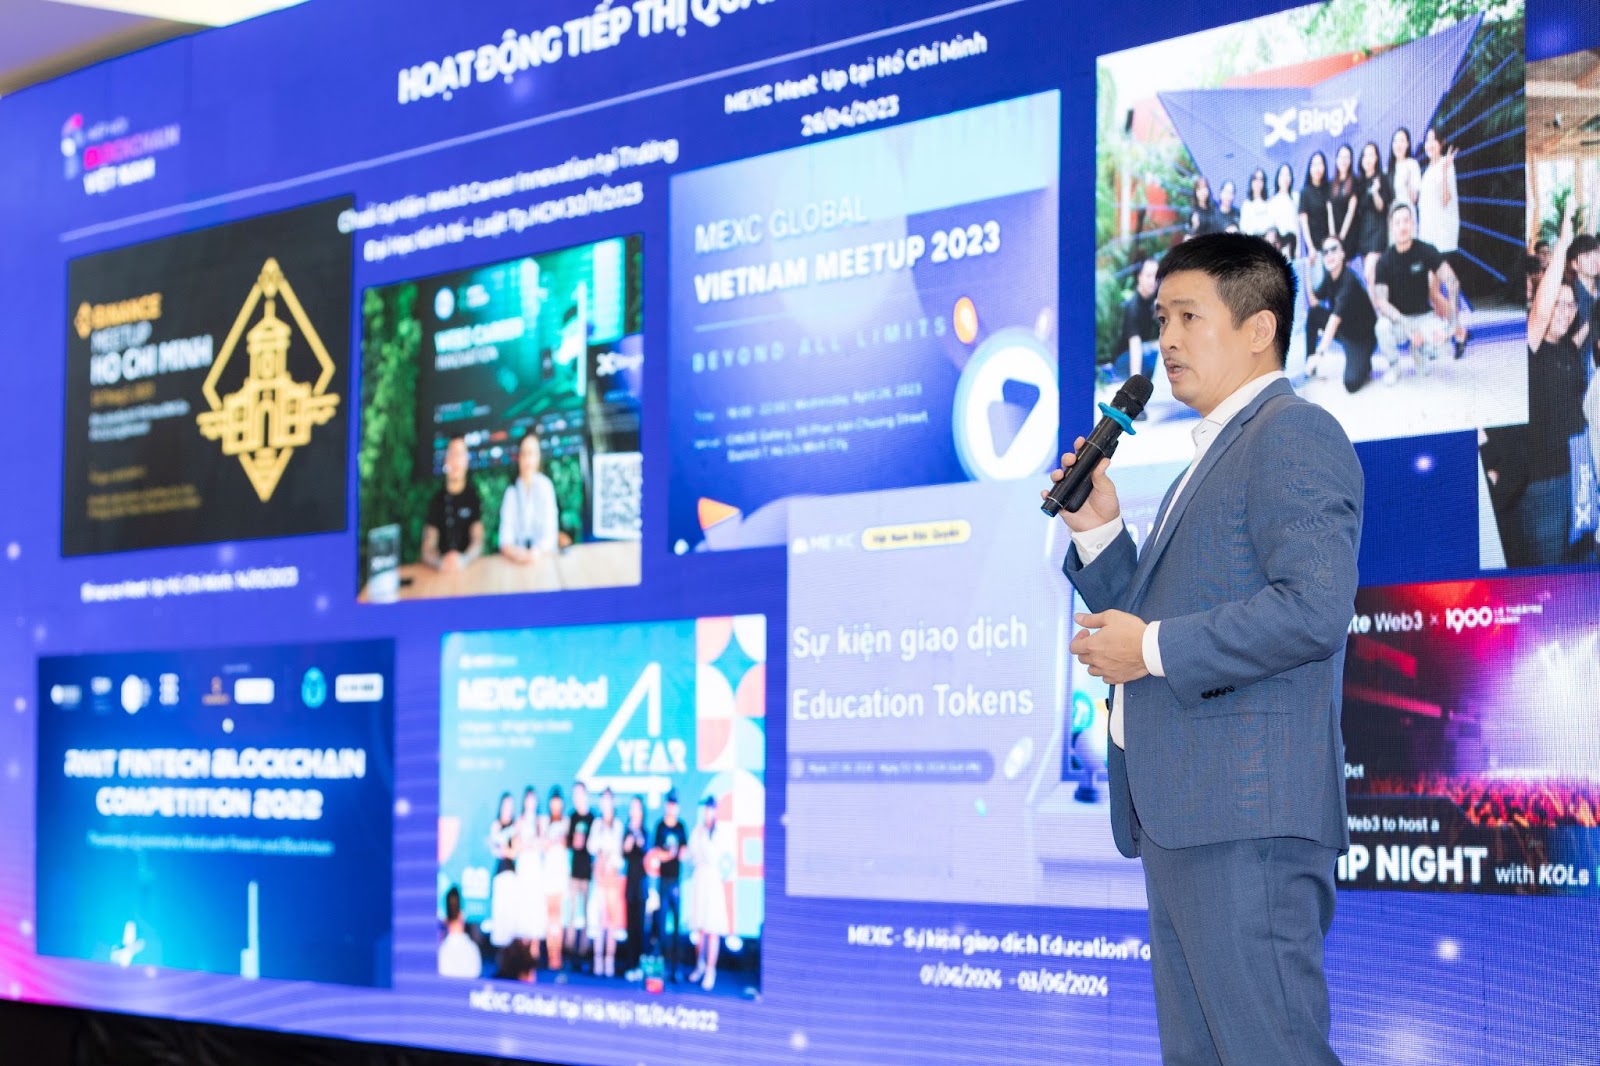 Ông Phan Đức Trung, Phó Chủ tịch thường trực Hiệp hội Blockchain Việt Nam (VBA) chia sẻ về thực trạng của các VA-VASP hiện tại ở Việt Nam và kiến nghị giải pháp quản lý lĩnh vực tài sản ảo theo các nguyên tắc quản trị rủi ro của thị trường tài chính truyền thống.